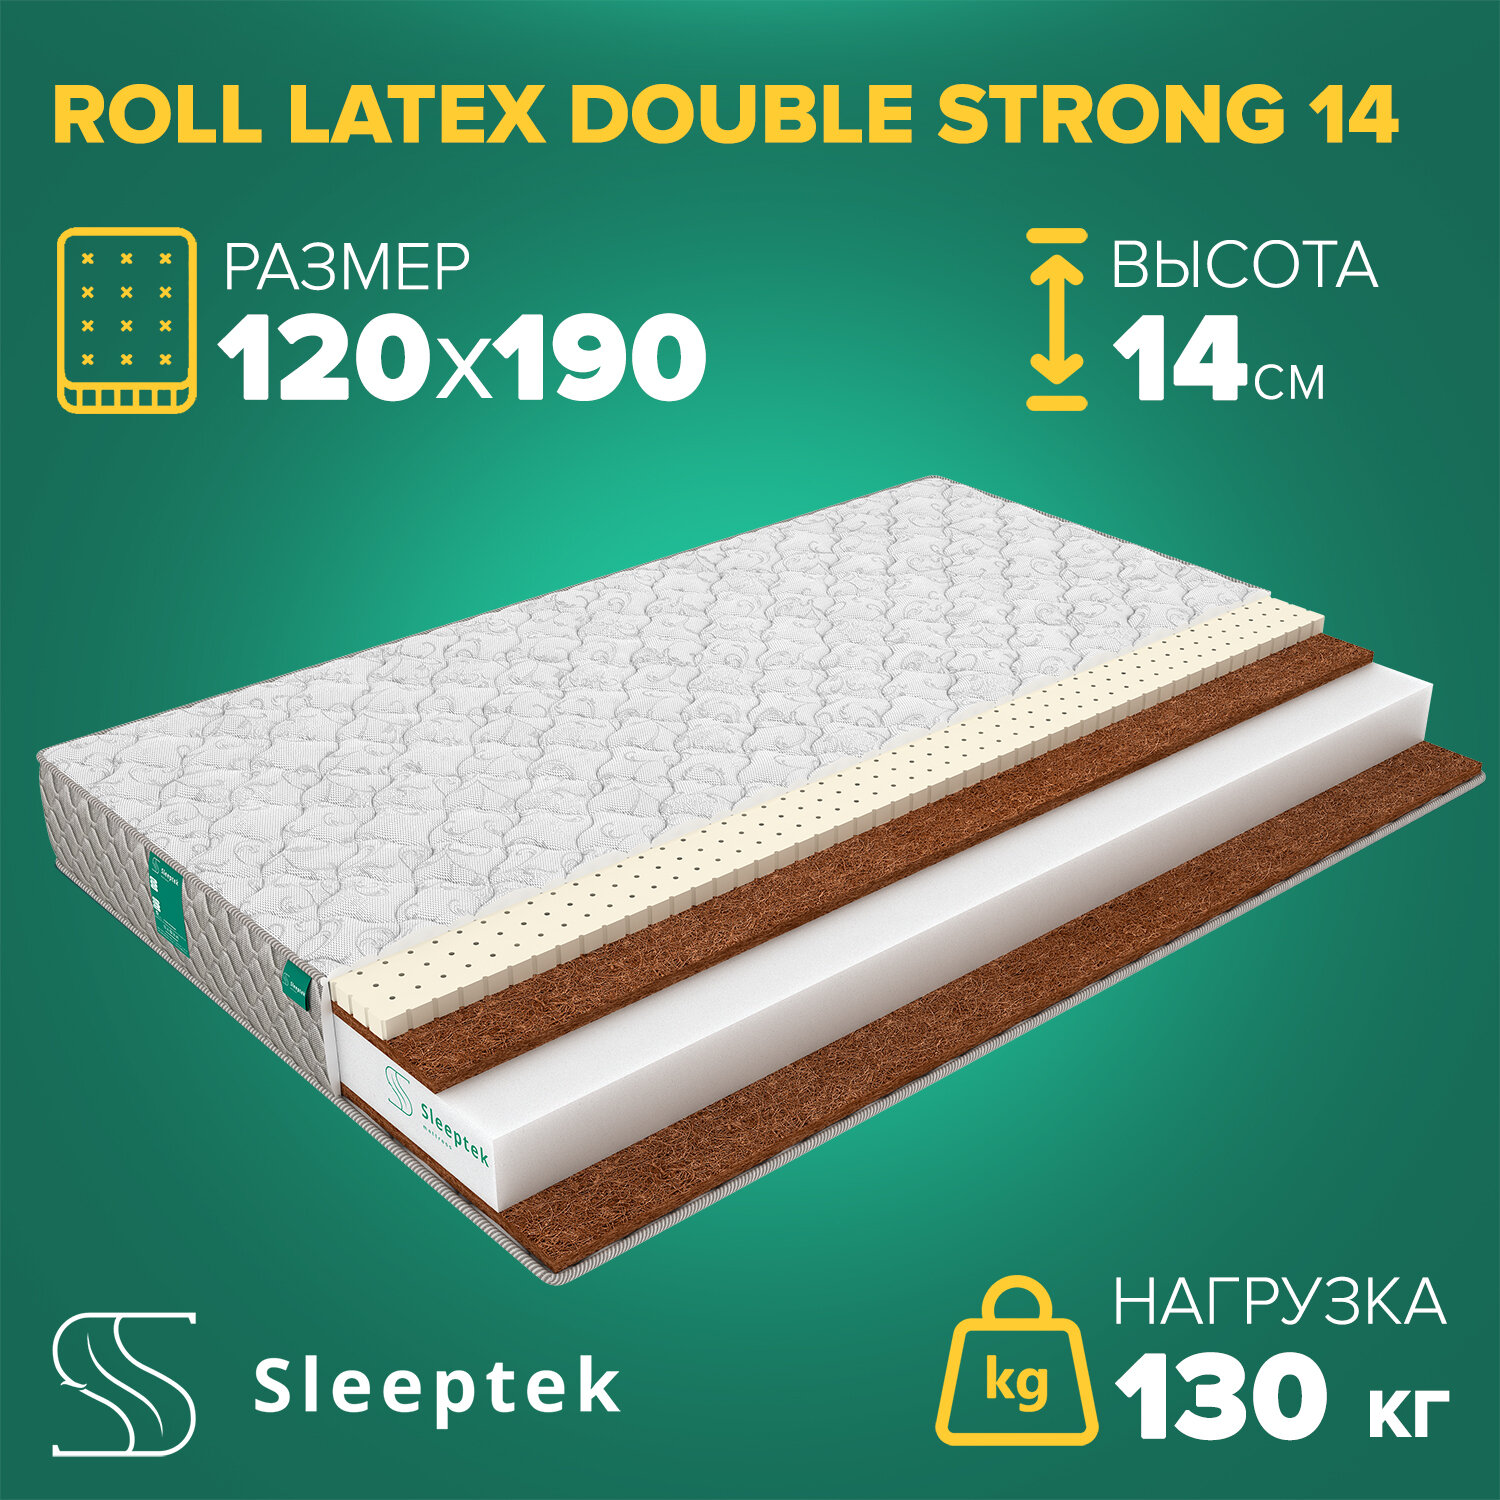 Матрас Sleeptek Roll Latex DoubleStrong 14 120х190